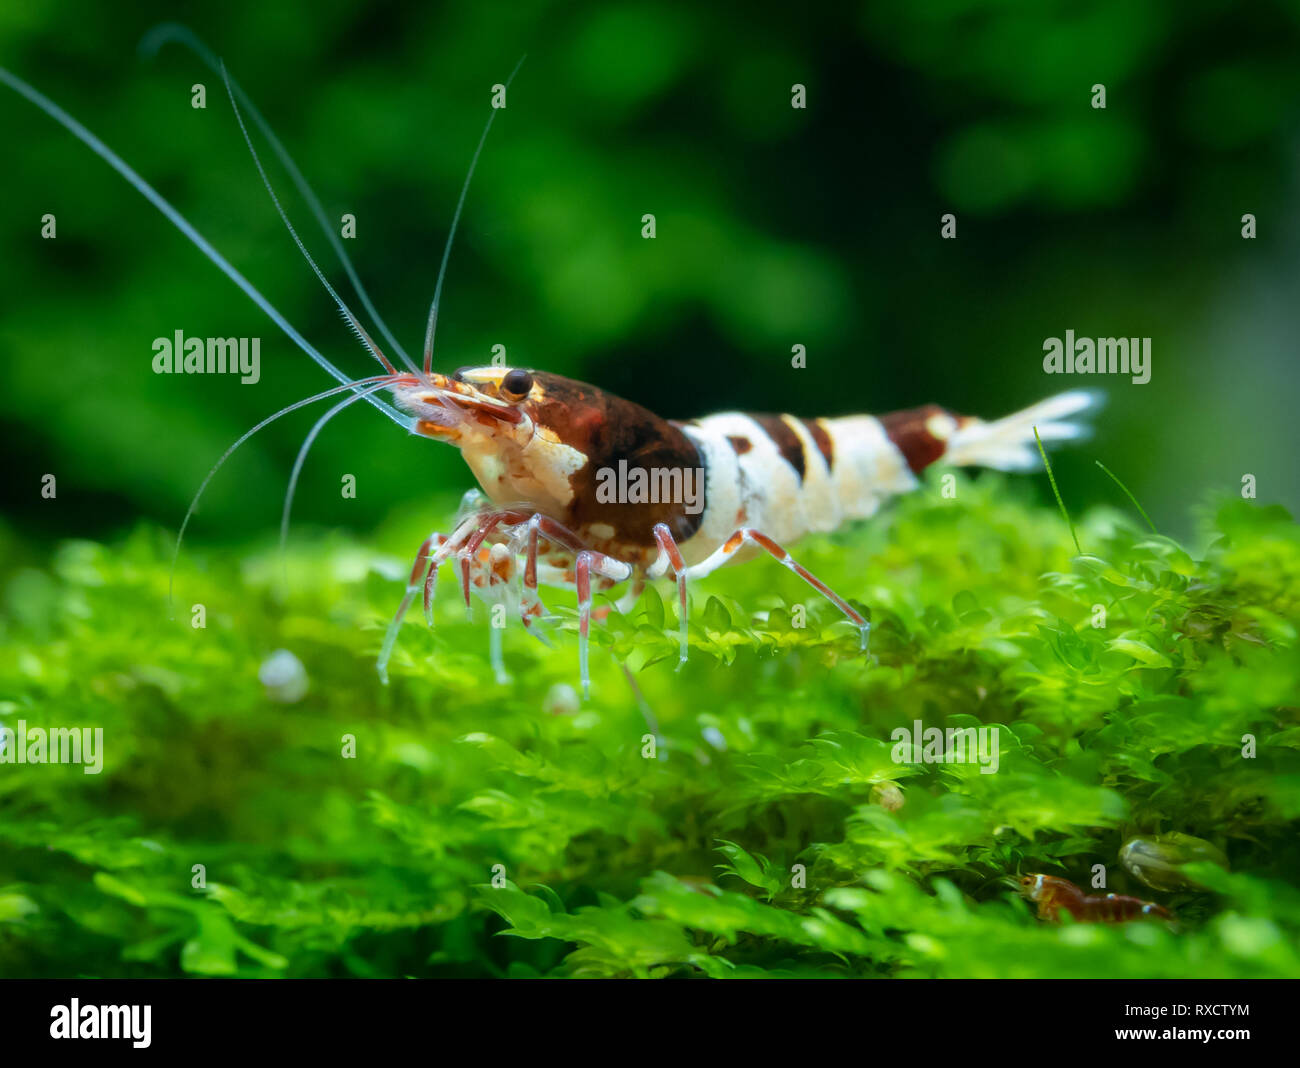 Caridina shrimp in aquarium Stock Photo